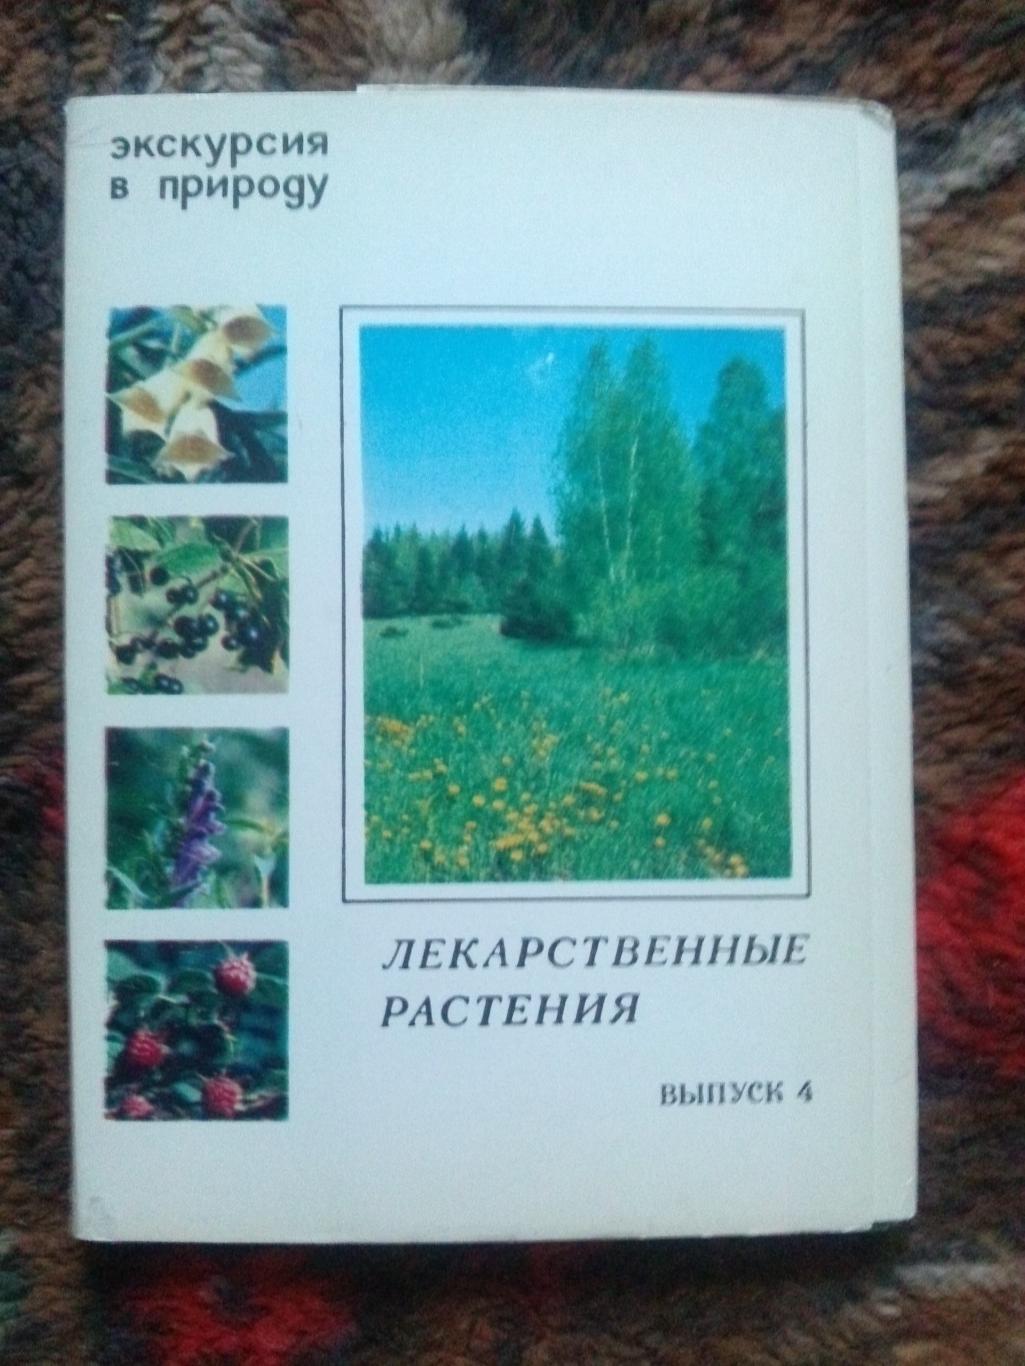 Экскурсия в природу 1980 г. полный набор - 25 открыток (Растения , флора , цветы